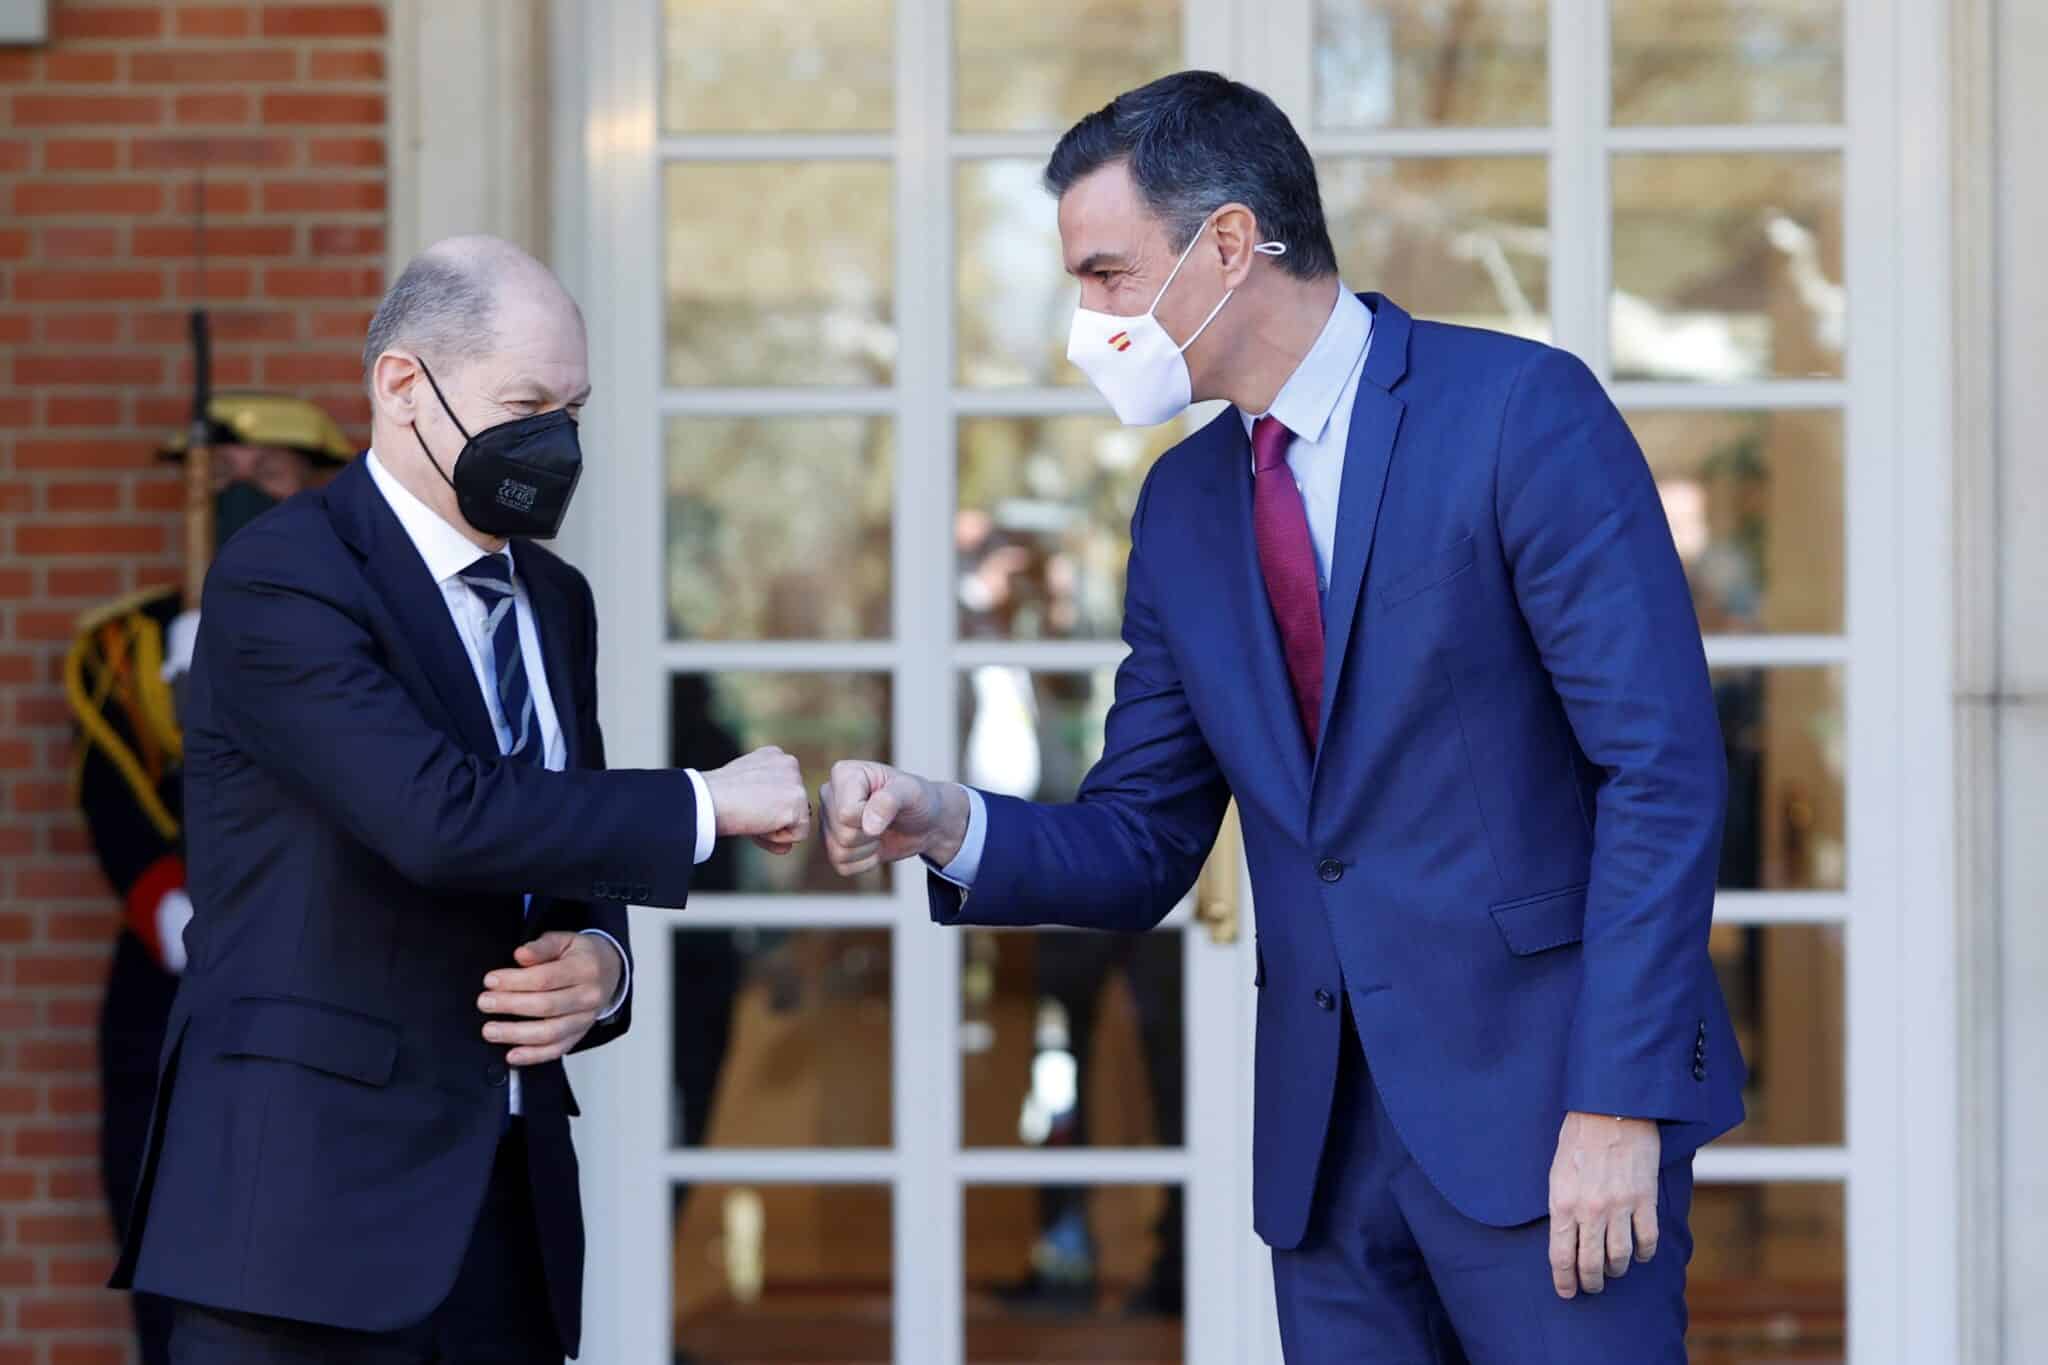 Olaf Scholz, canciller de Alemania, y Pedro Sánchez, presidente del Gobierno español, se saludan en Moncloa